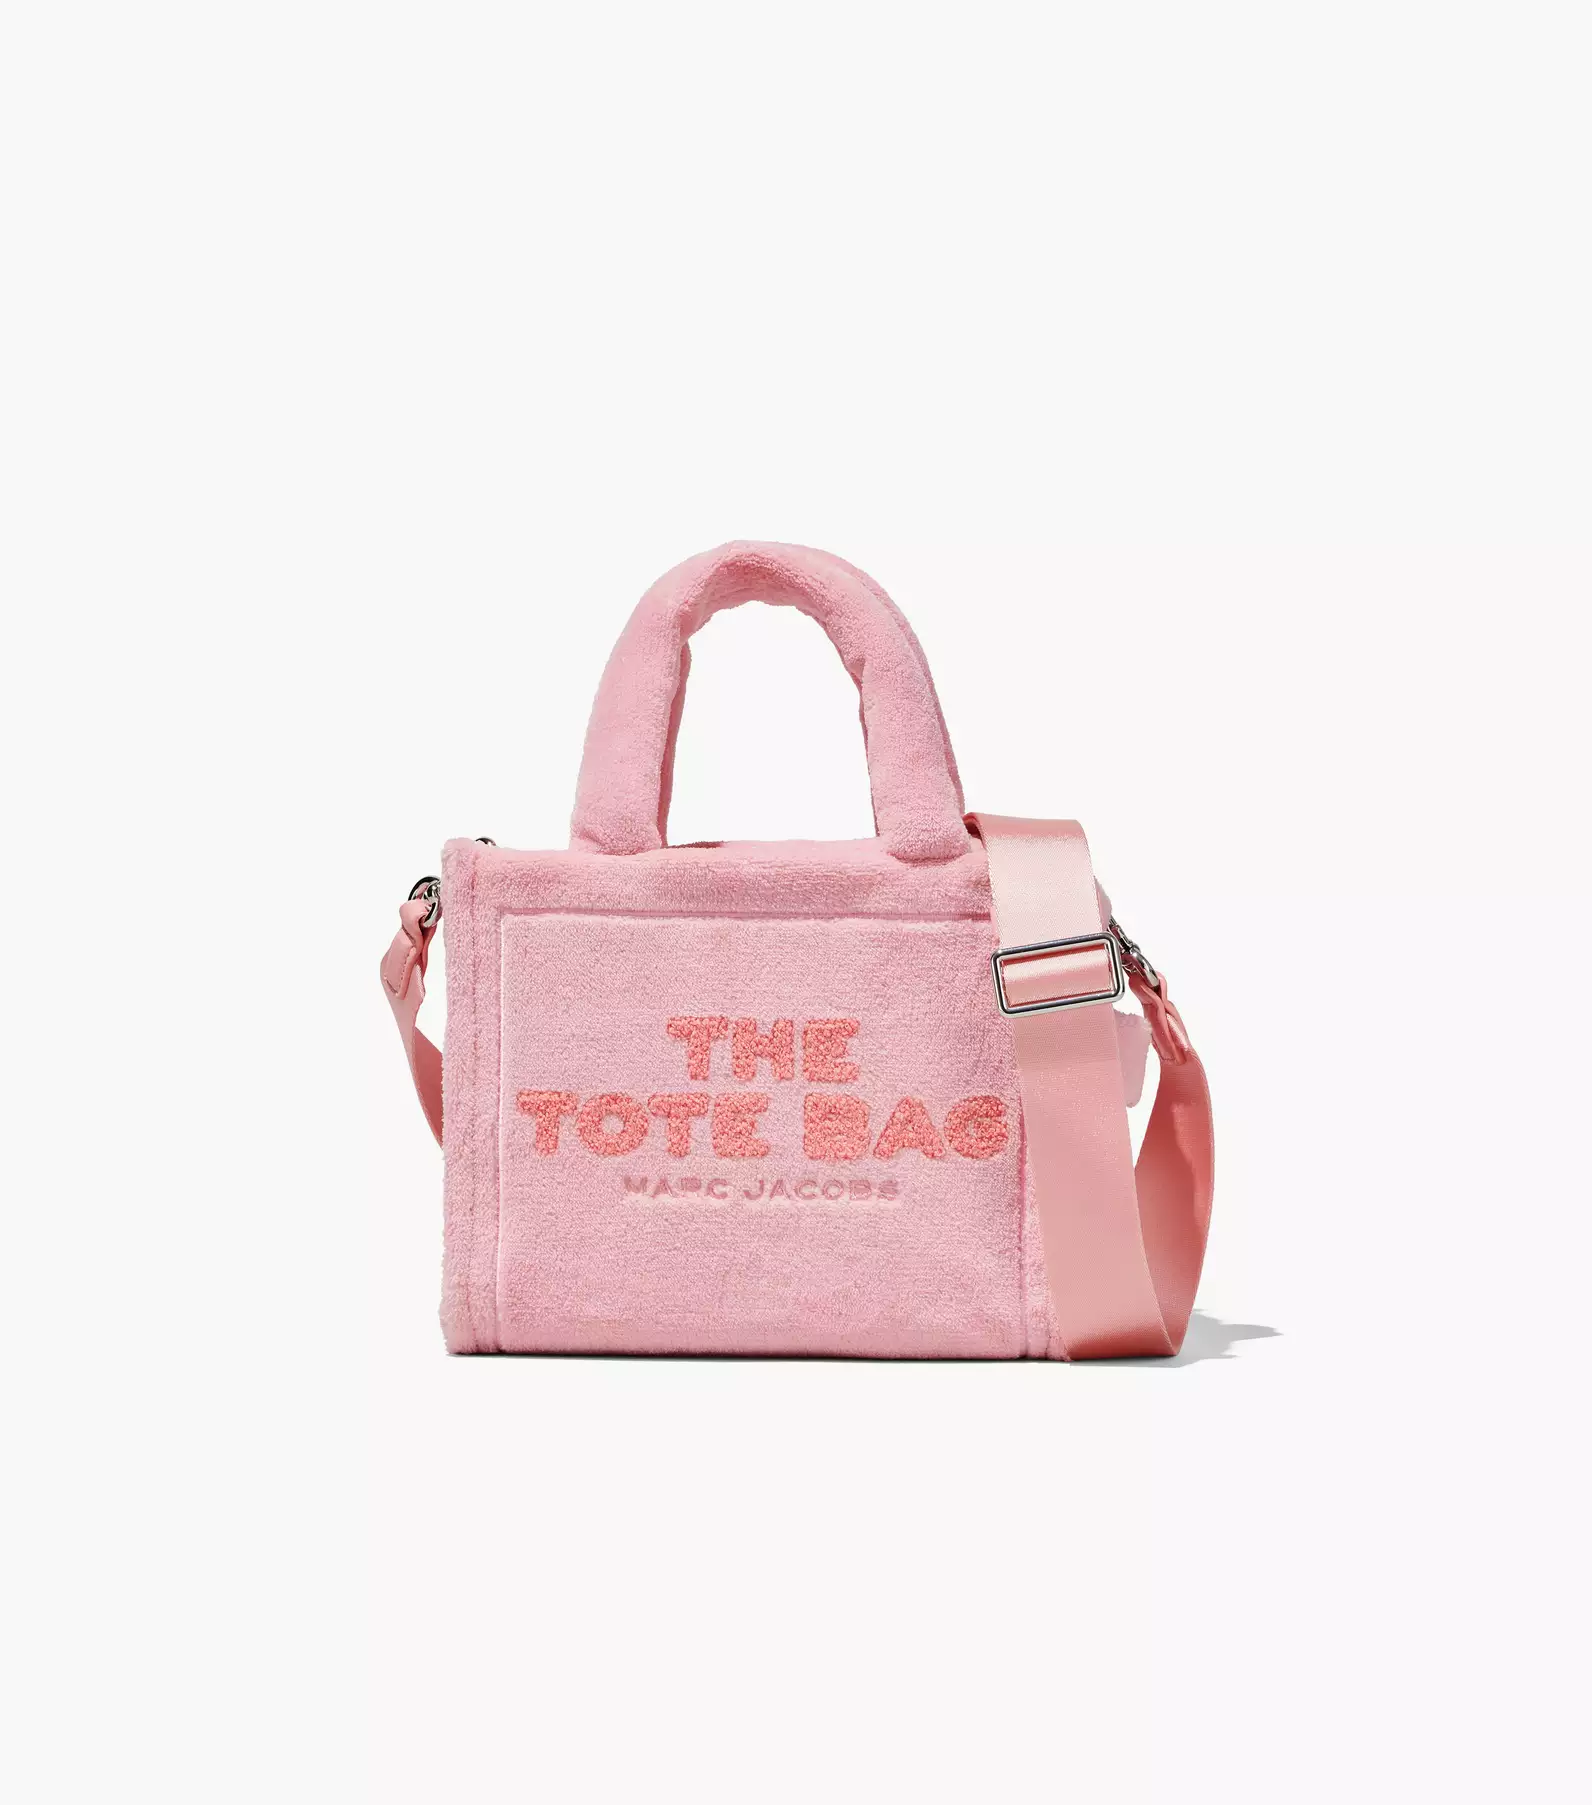 The Terry Mini Tote Bag